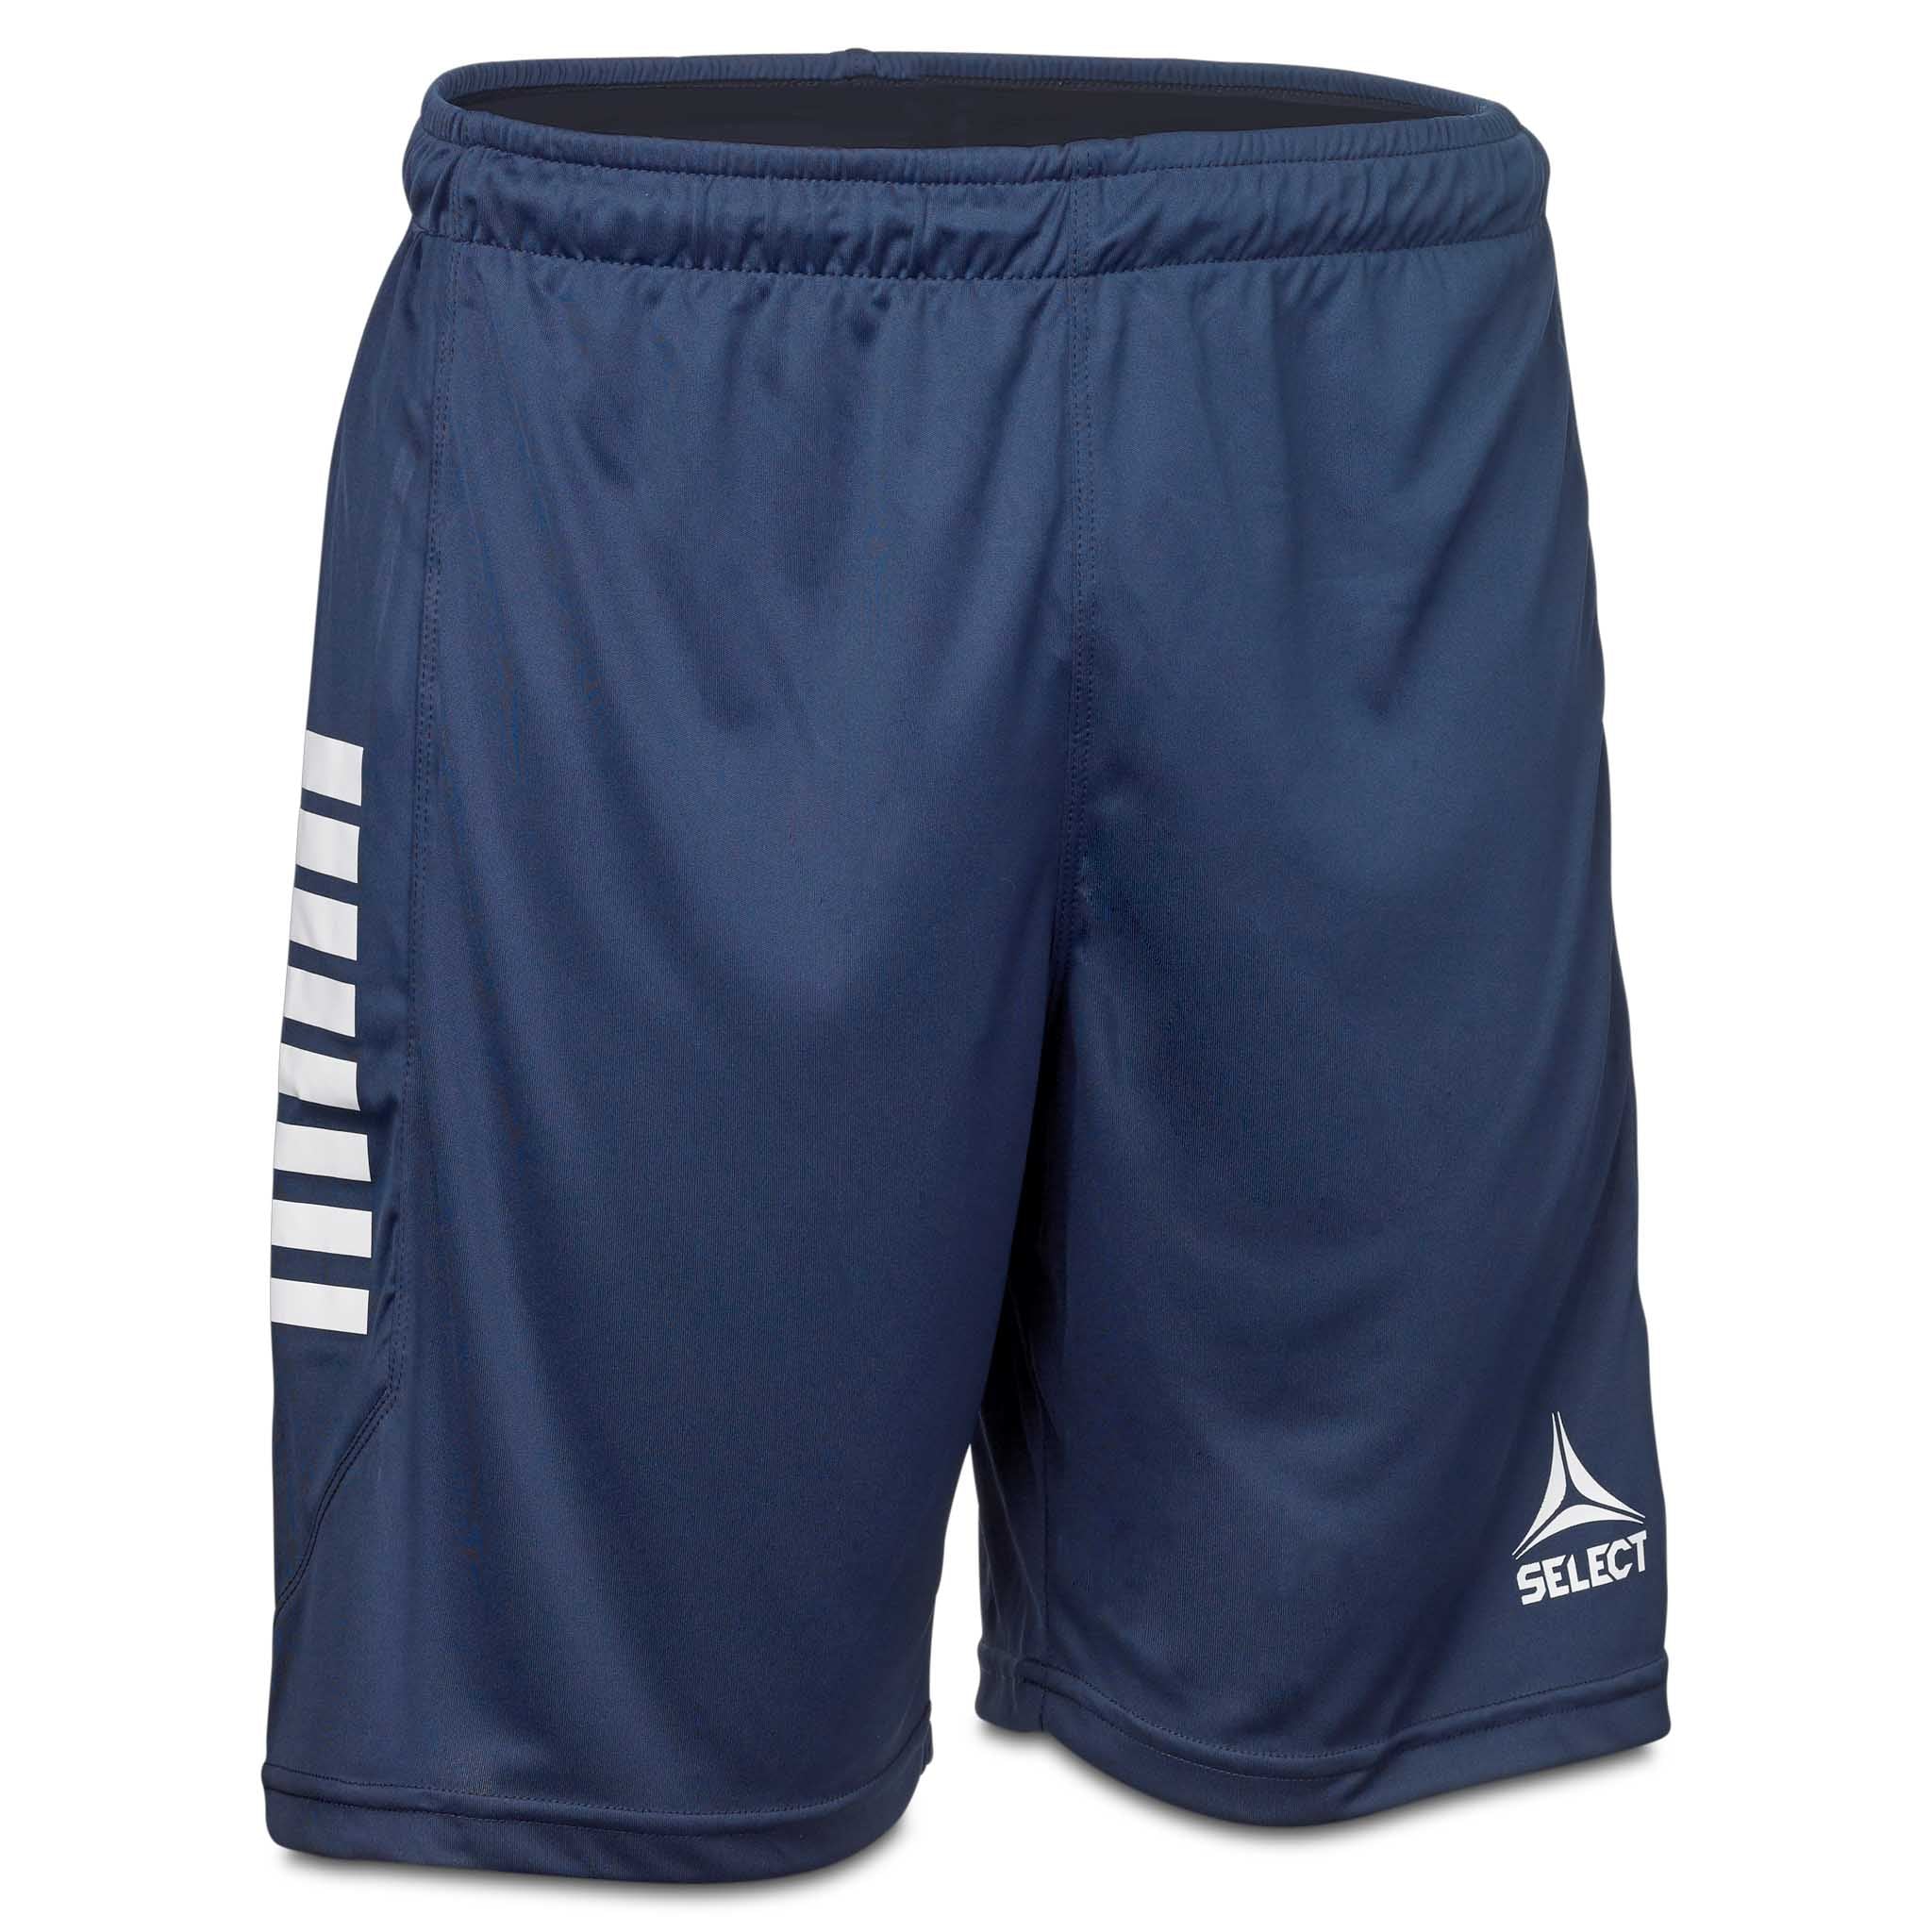 Monaco shorts - Børn #farve_marineblå/hvid